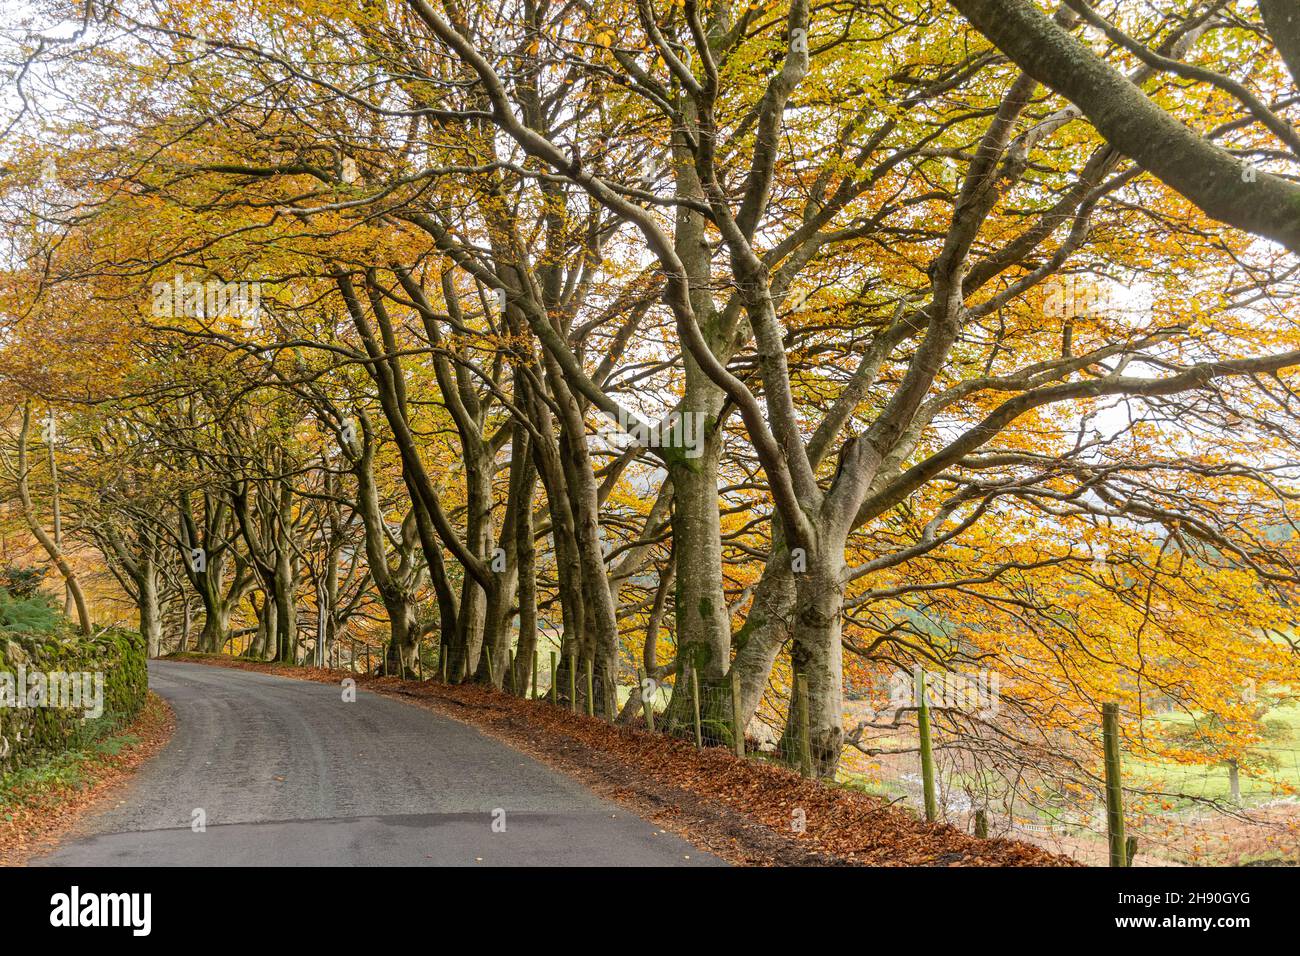 Rangée de hêtres dorés bordant la route le long du col de Whinlatter dans le parc national de Lake District pendant l'automne ou novembre, Cumbria, Angleterre, Royaume-Uni Banque D'Images